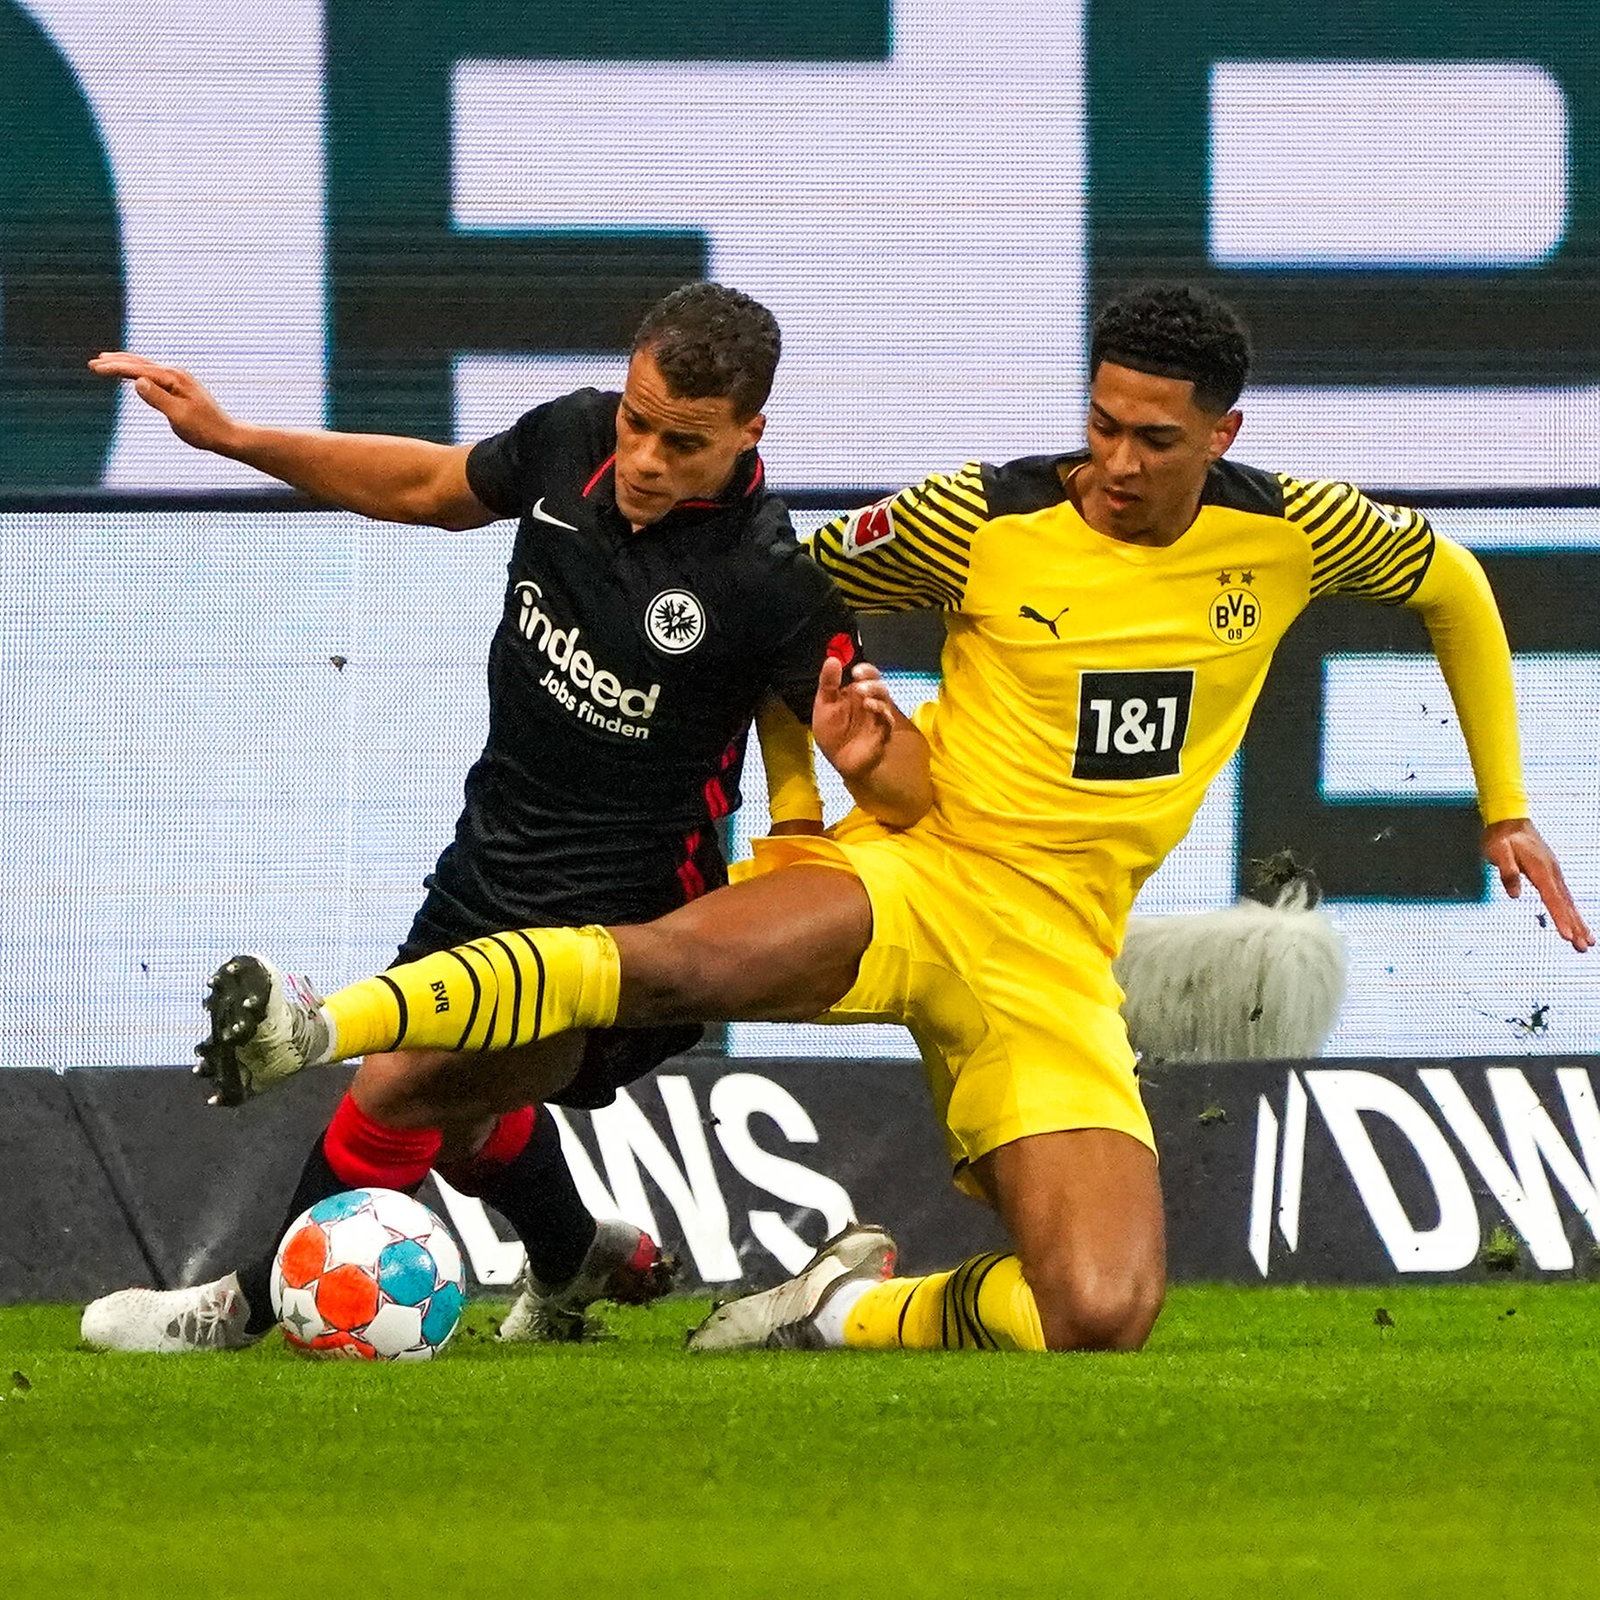 Das Wichtigste zum Spiel gegen Dortmund Die Eintracht muss die Teenager bändigen hessenschau.de Eintracht Frankfurt